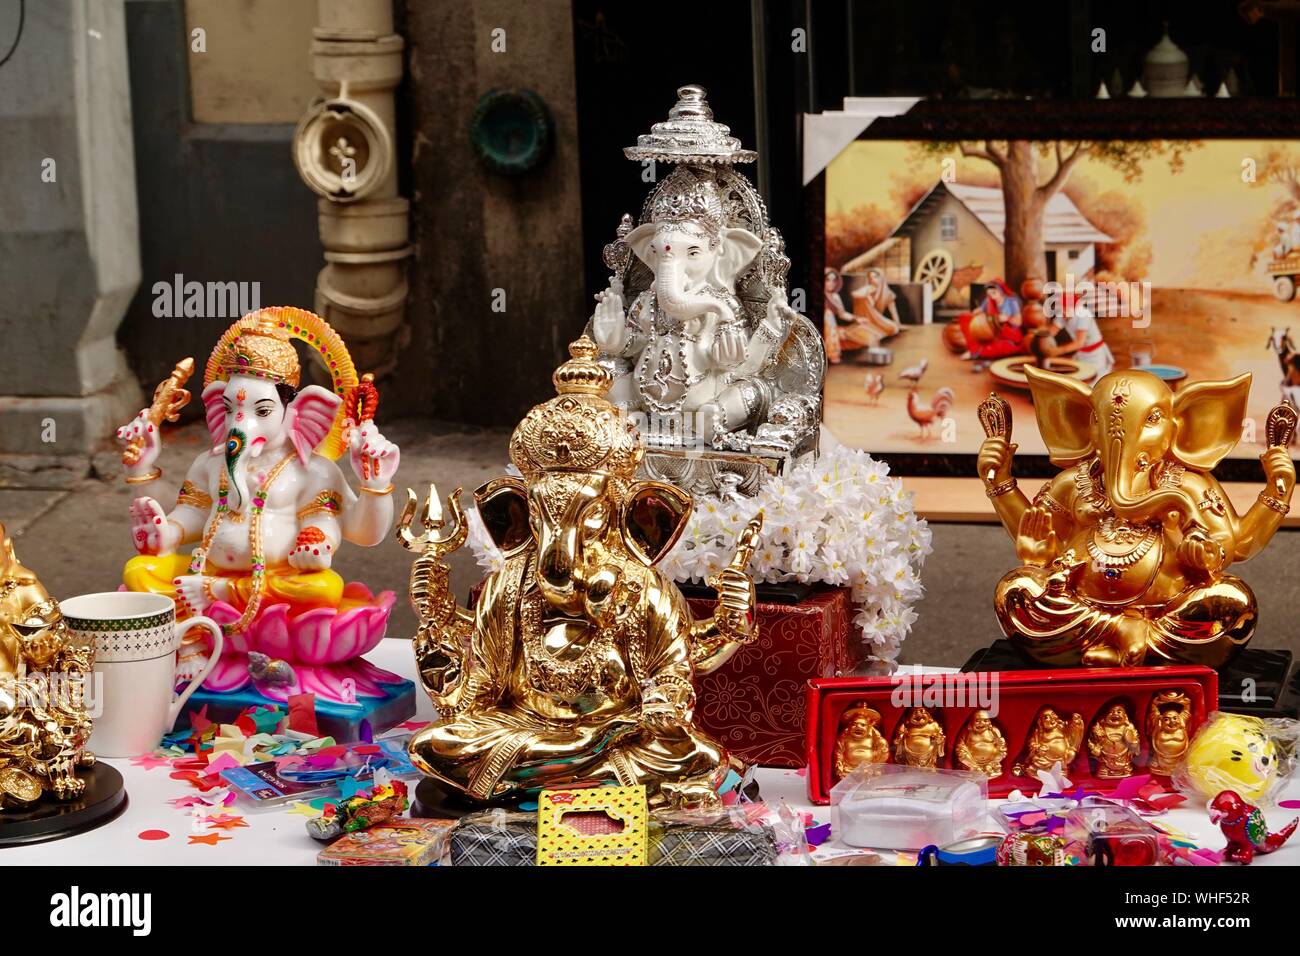 Ganesh Chaturthi Affichage des statues, la divinité à tête d'éléphant, Ganesha, dieu de nouveaux départs, 18ème arrondissement de Paris, France. Banque D'Images